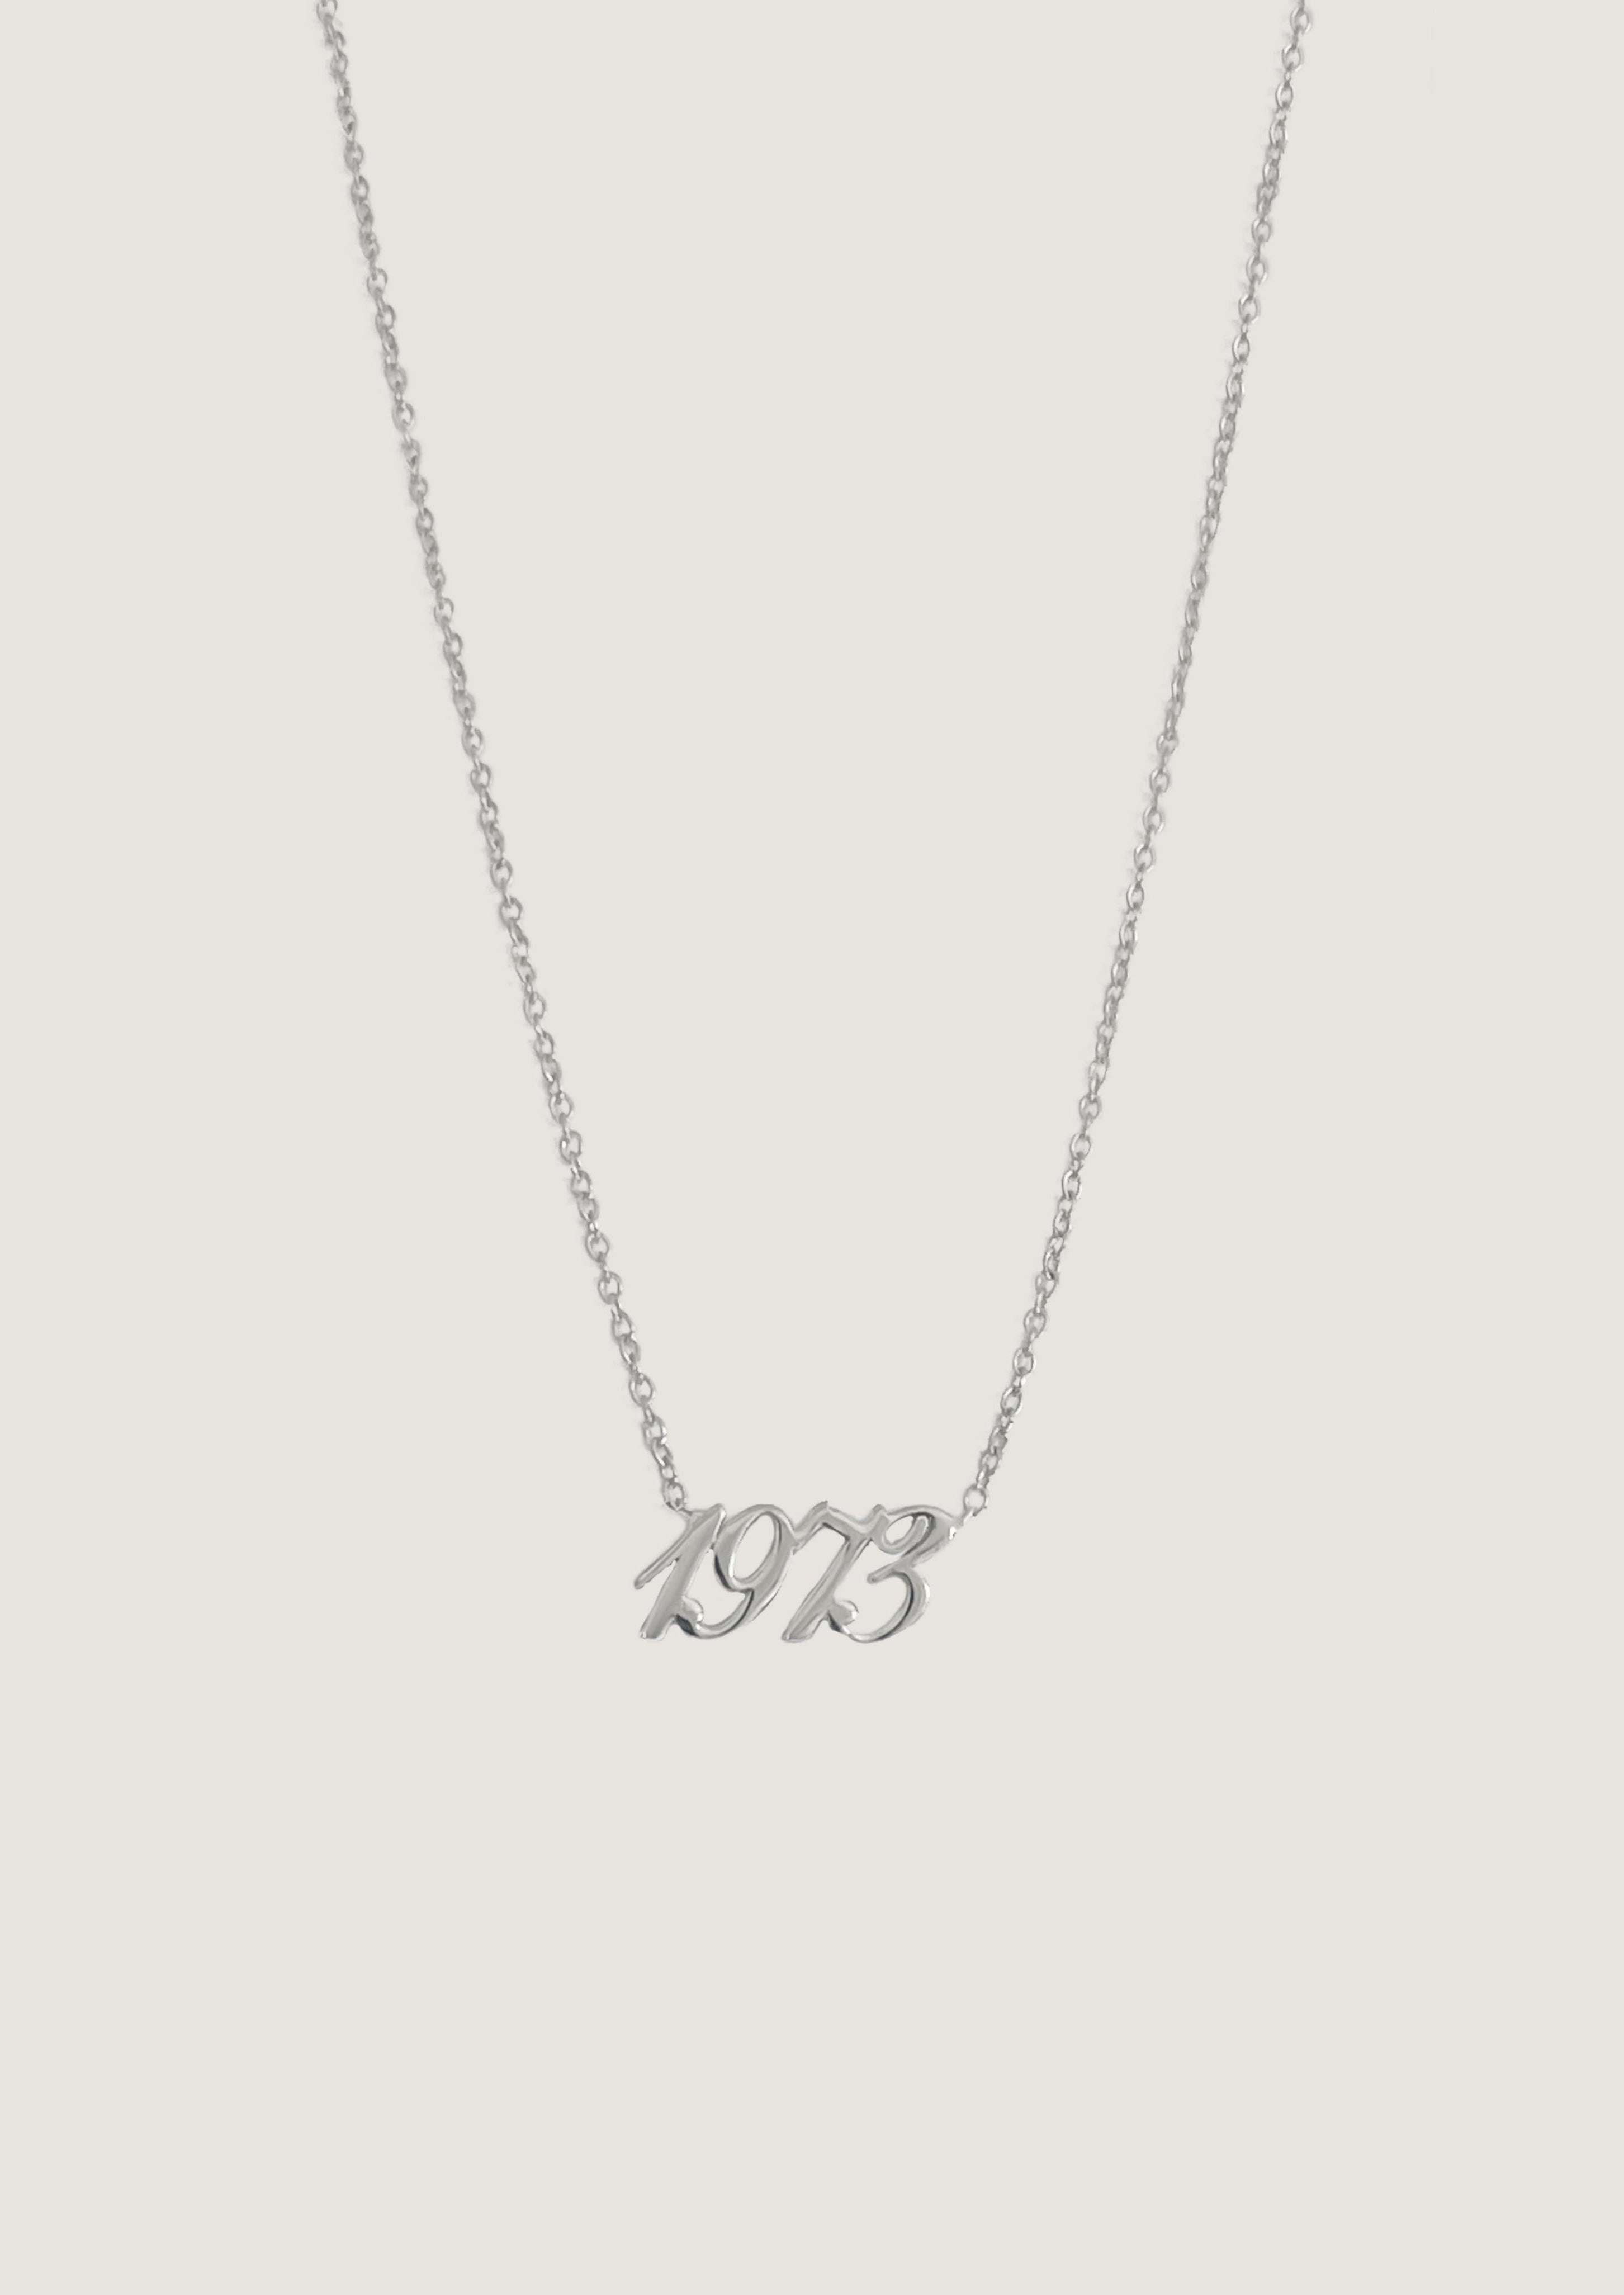 alt="1973 sterling silver necklace"